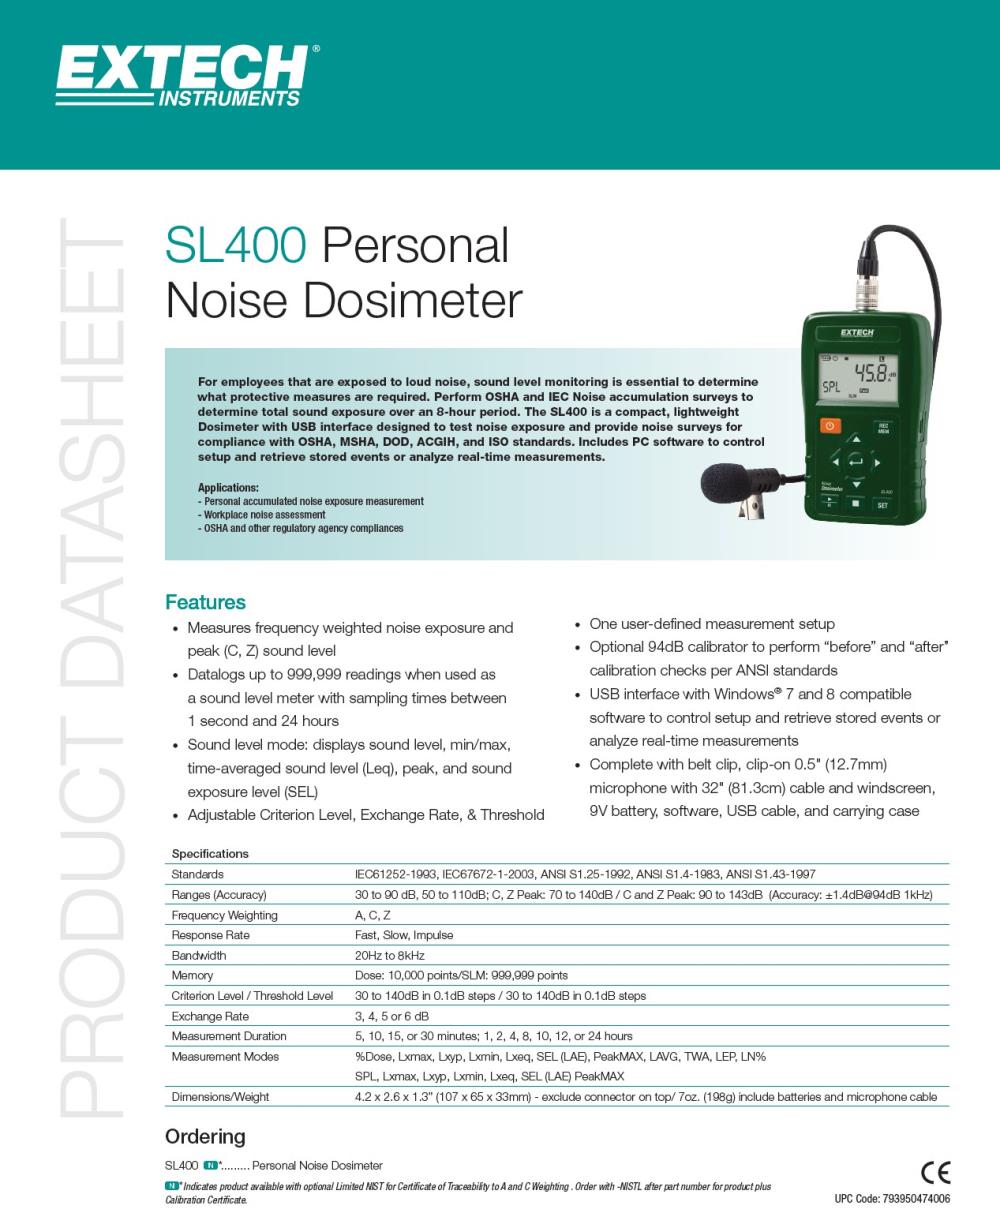 เครื่องวัดความดังเสียง (Personal Noise Dosimeter), Brand: Extech, Model: SL400,#ขาย #จำหน่าย #noisedosimeter #noisemeter #dosimeter #personalnoisedosimeter #personaldosimeter #soundlevelmeter #เครื่องวัดความดังเสียง #extech #sl400  #eec #dealer #distributor #ตัวแทนจำหน่าย #factory #industrial #นิคมอุตสาหกรรม #อุตสาหกรรม #สินค้าอุตสาหกรรม #โรงงาน #สิ่งแวดล้อม #environment #engineering #engineer #safety #จป #construction #รับเหมา #ก่อสร้าง #workicon #workicontech,,Machinery and Process Equipment/Machinery/Noise Control